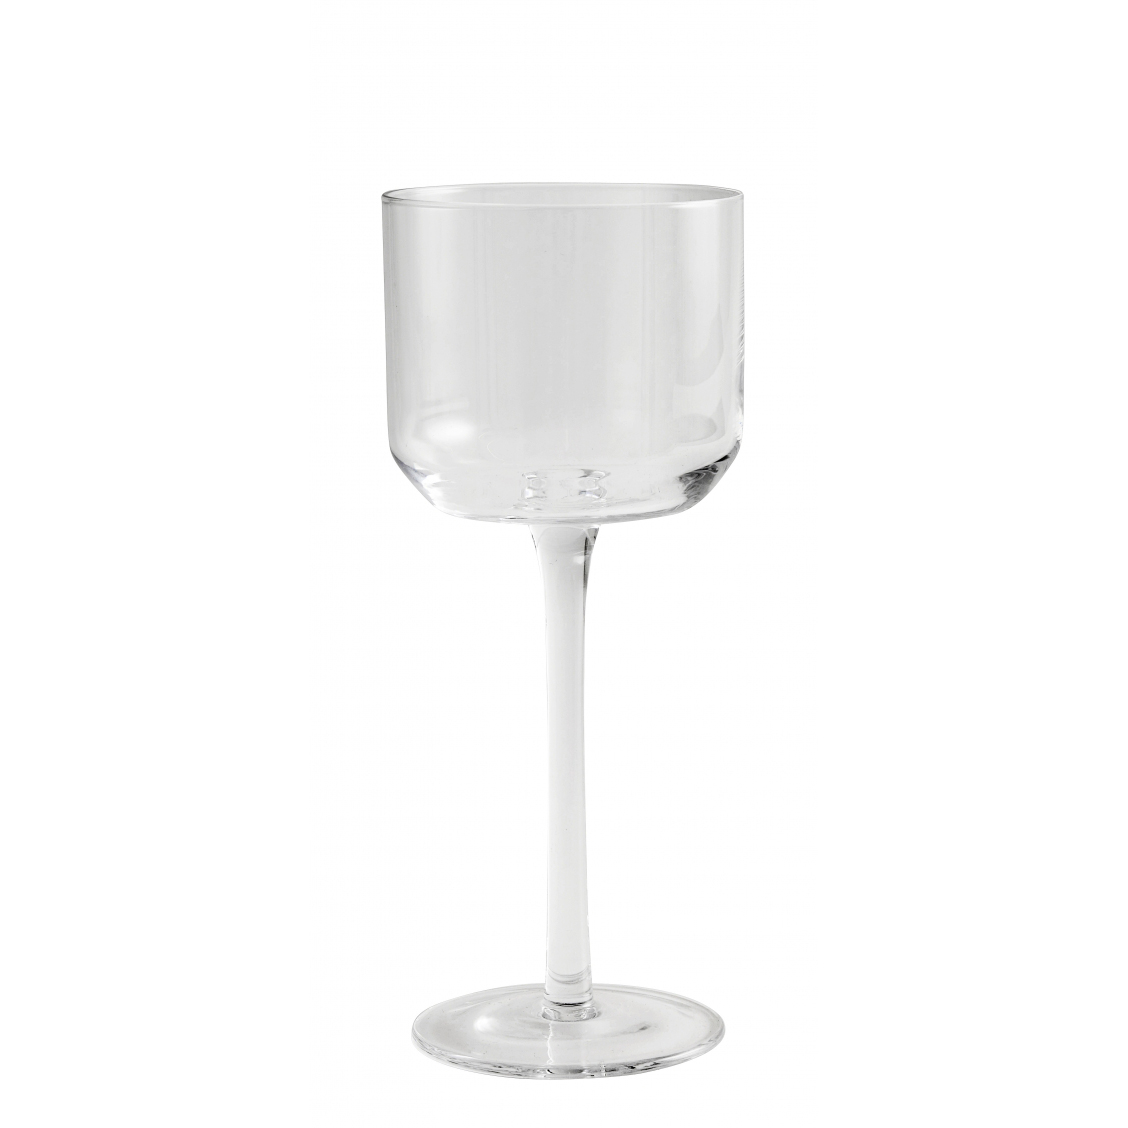 RETRO white wine glass, clear